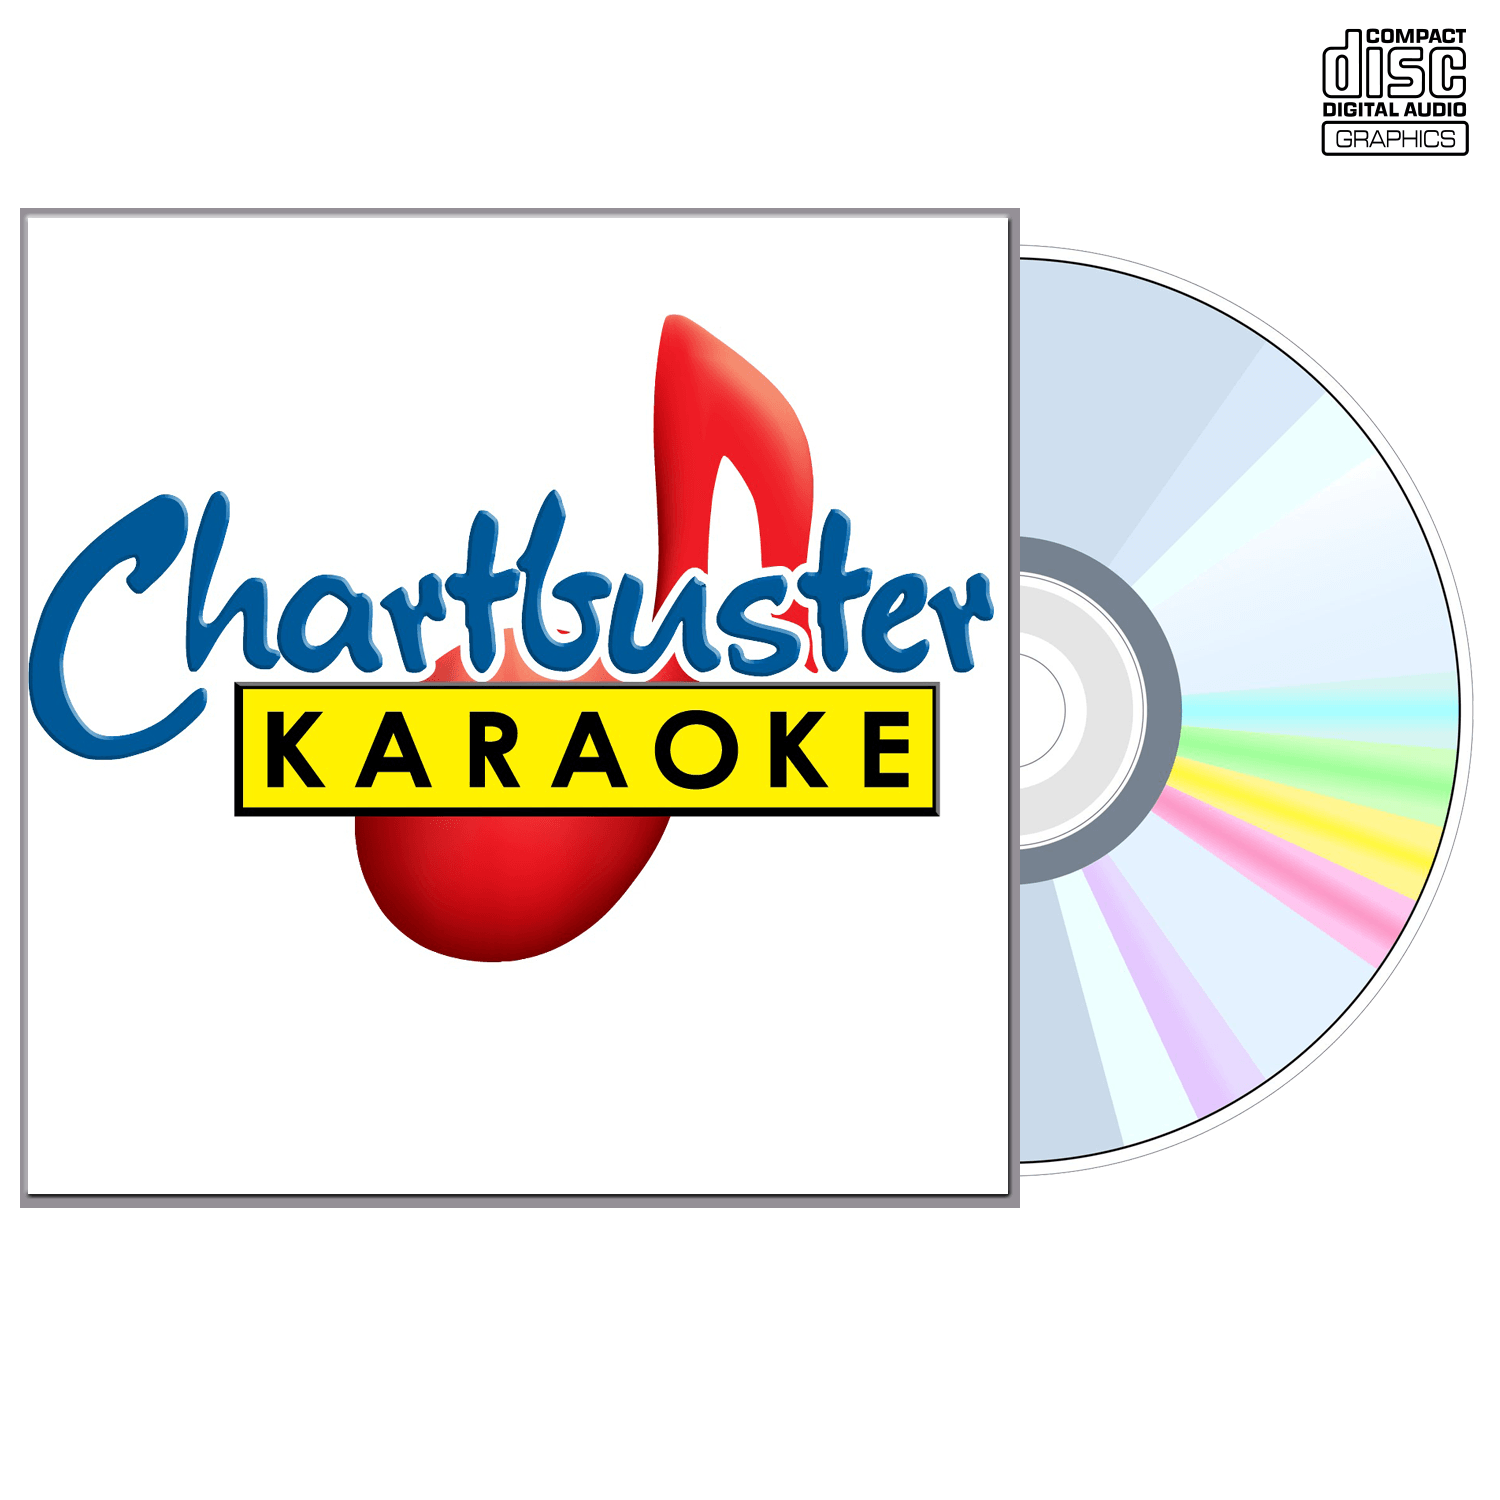 Adele And Amy Winehouse - CD+G - Chartbuster Karaoke - Karaoke Home Entertainment